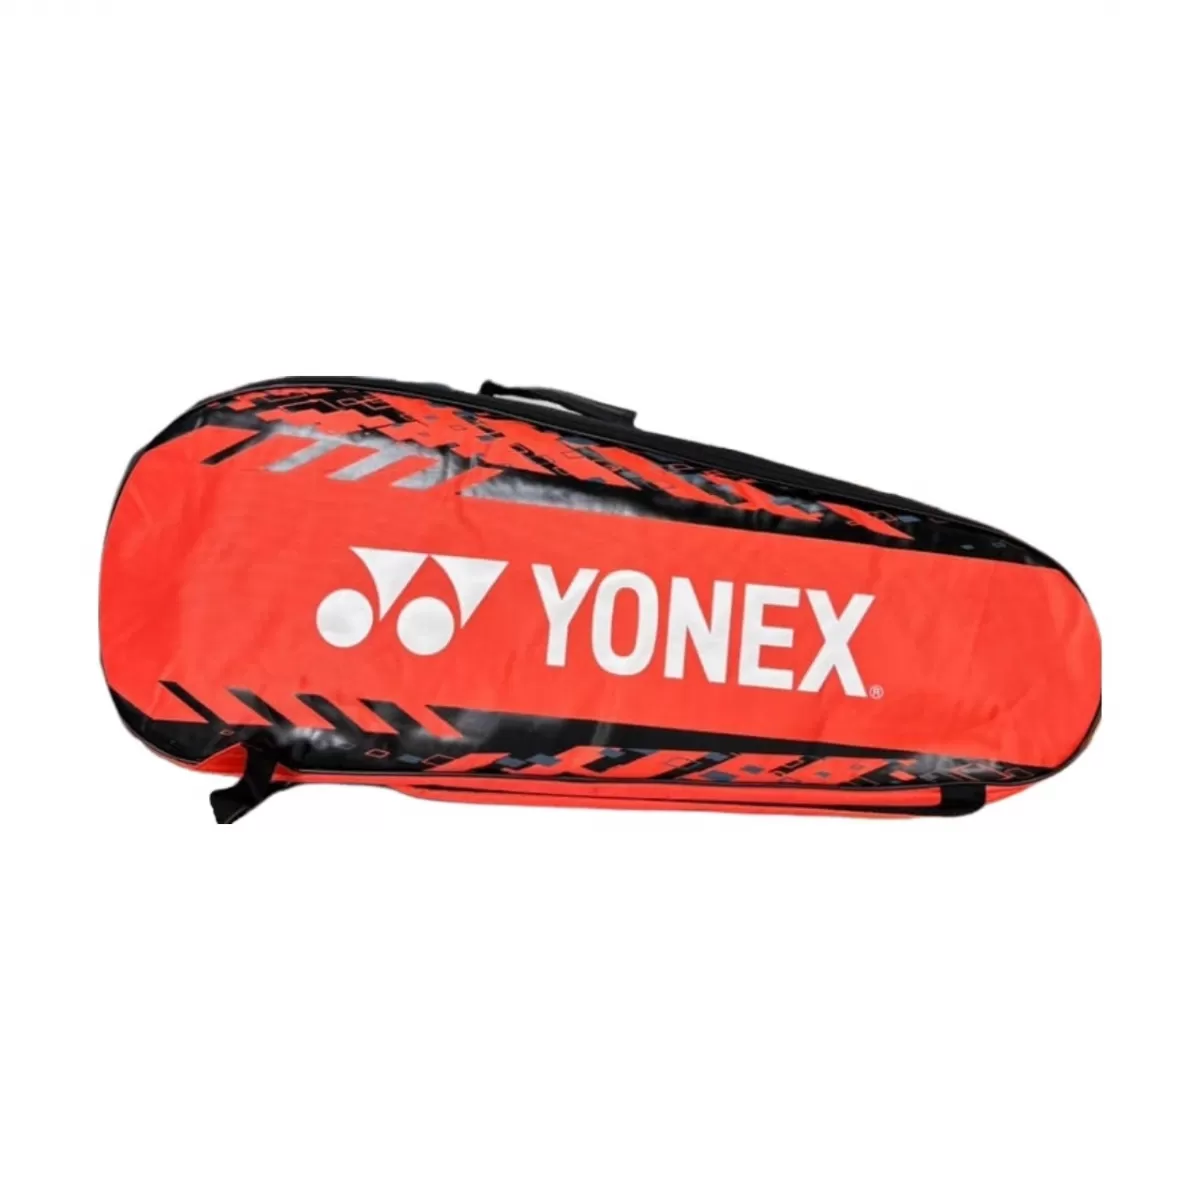 Túi cầu lông Yonex BAG2326T02R - Racing red/White chính hãng